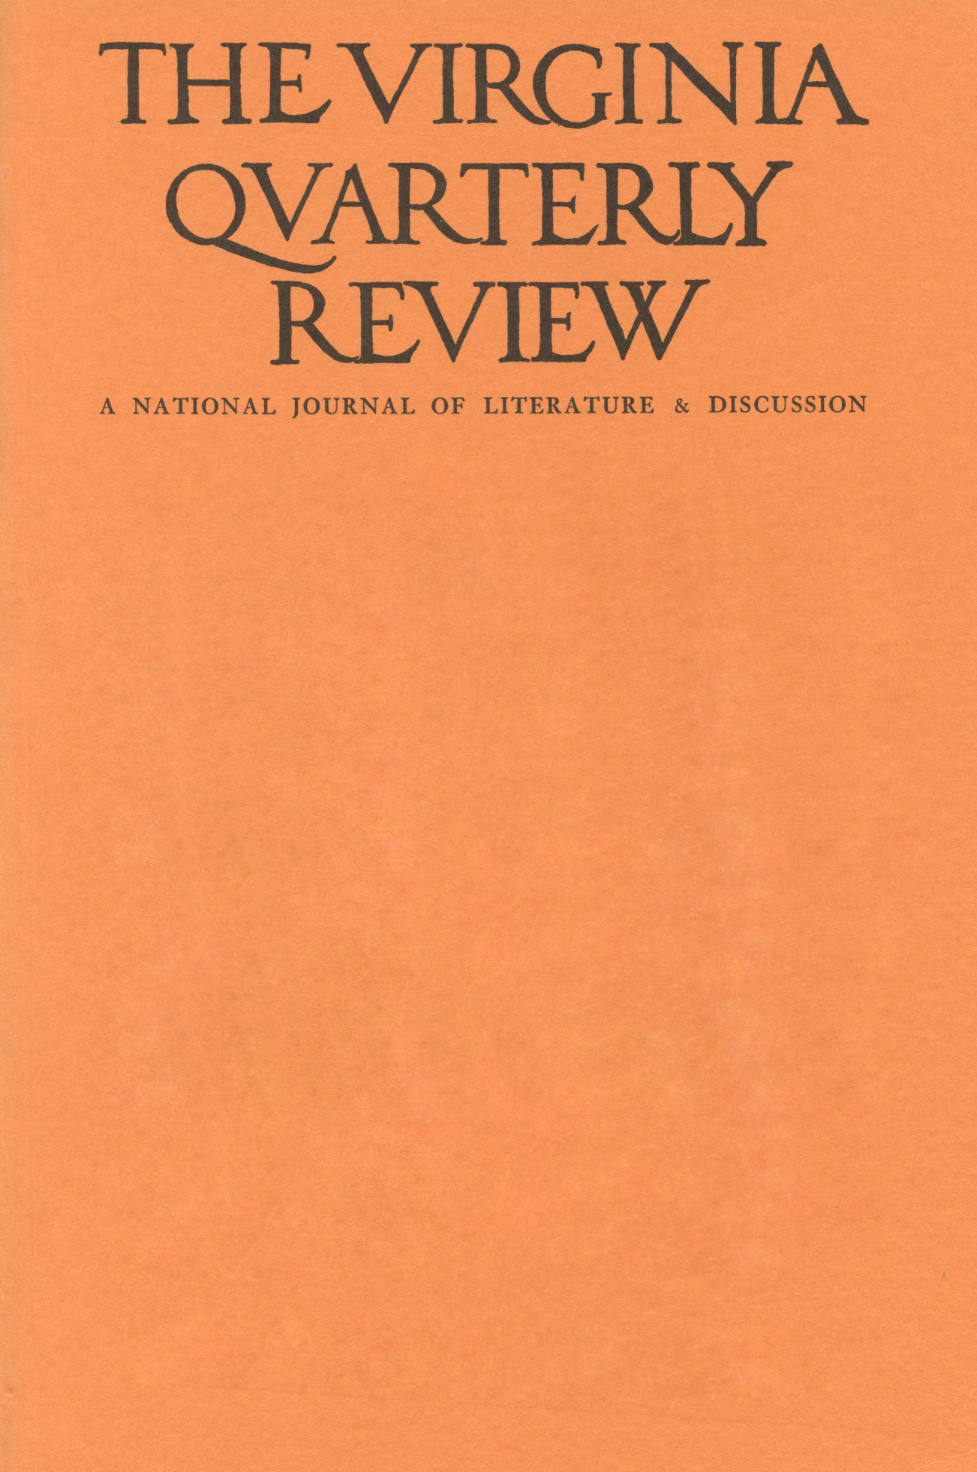 Virginia Quarterly Review, Summer 1953 cover